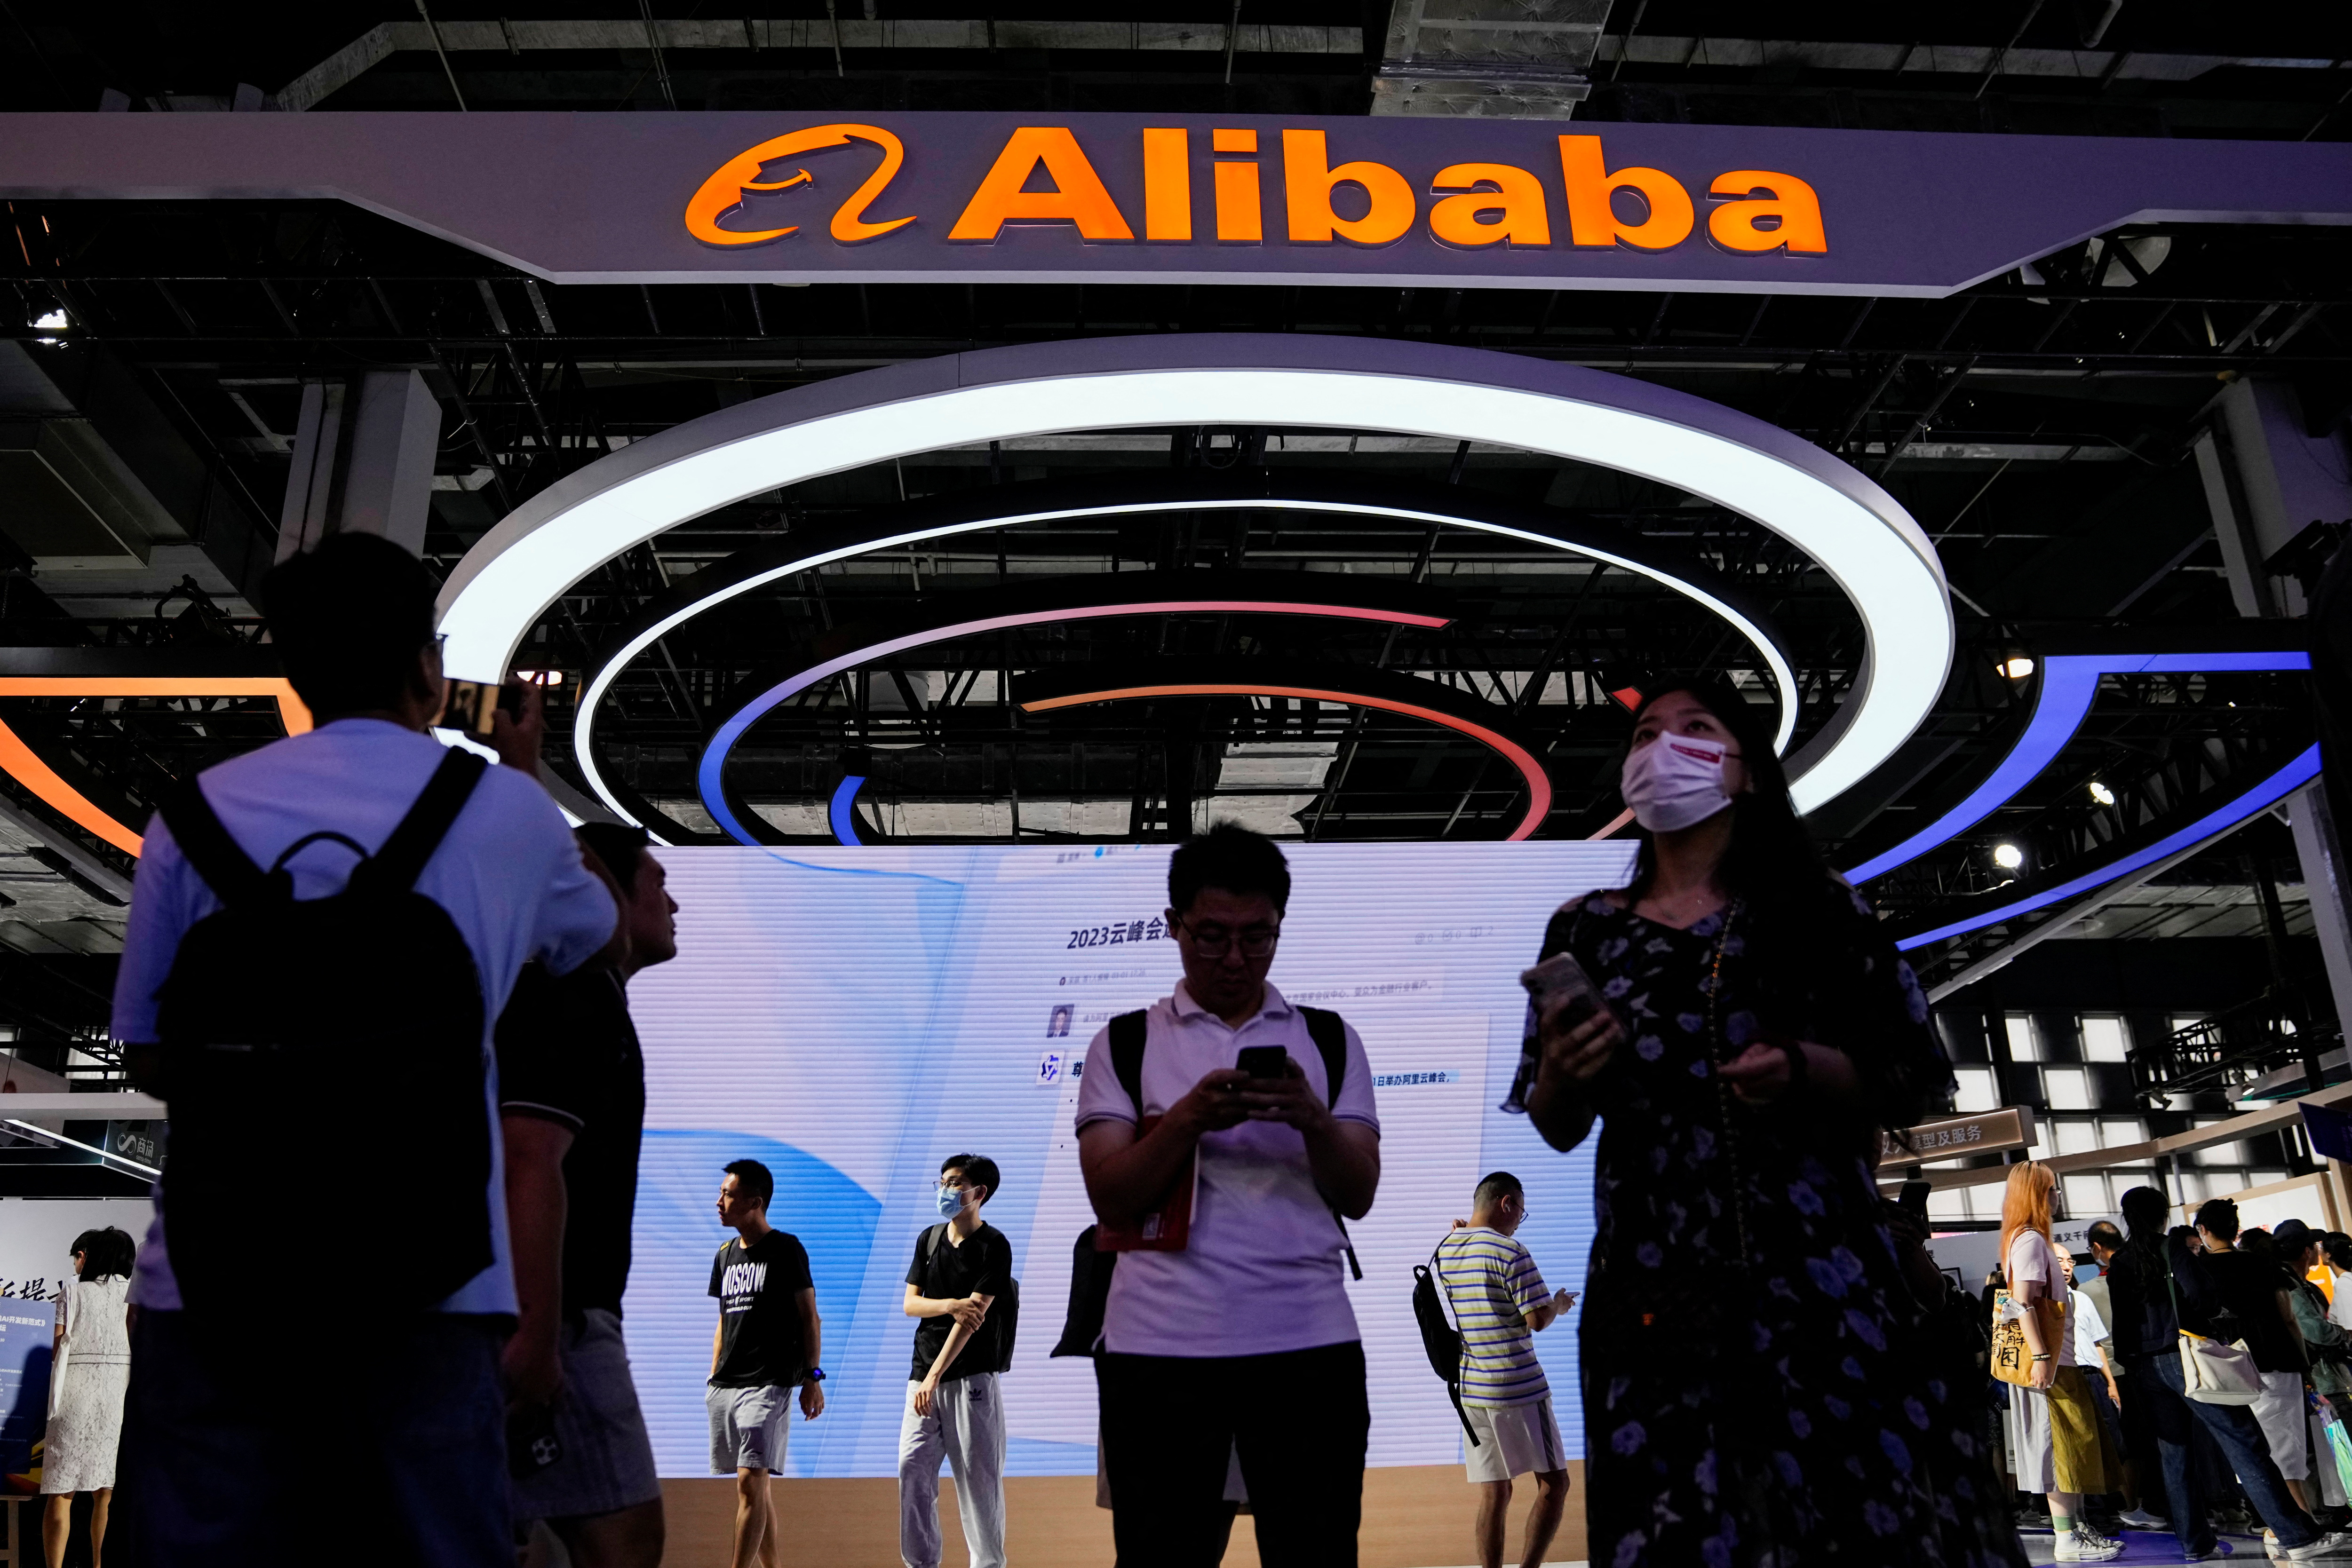 La signature du groupe Alibaba est visible à la Conférence mondiale sur l'intelligence artificielle (WAIC) à Shanghai